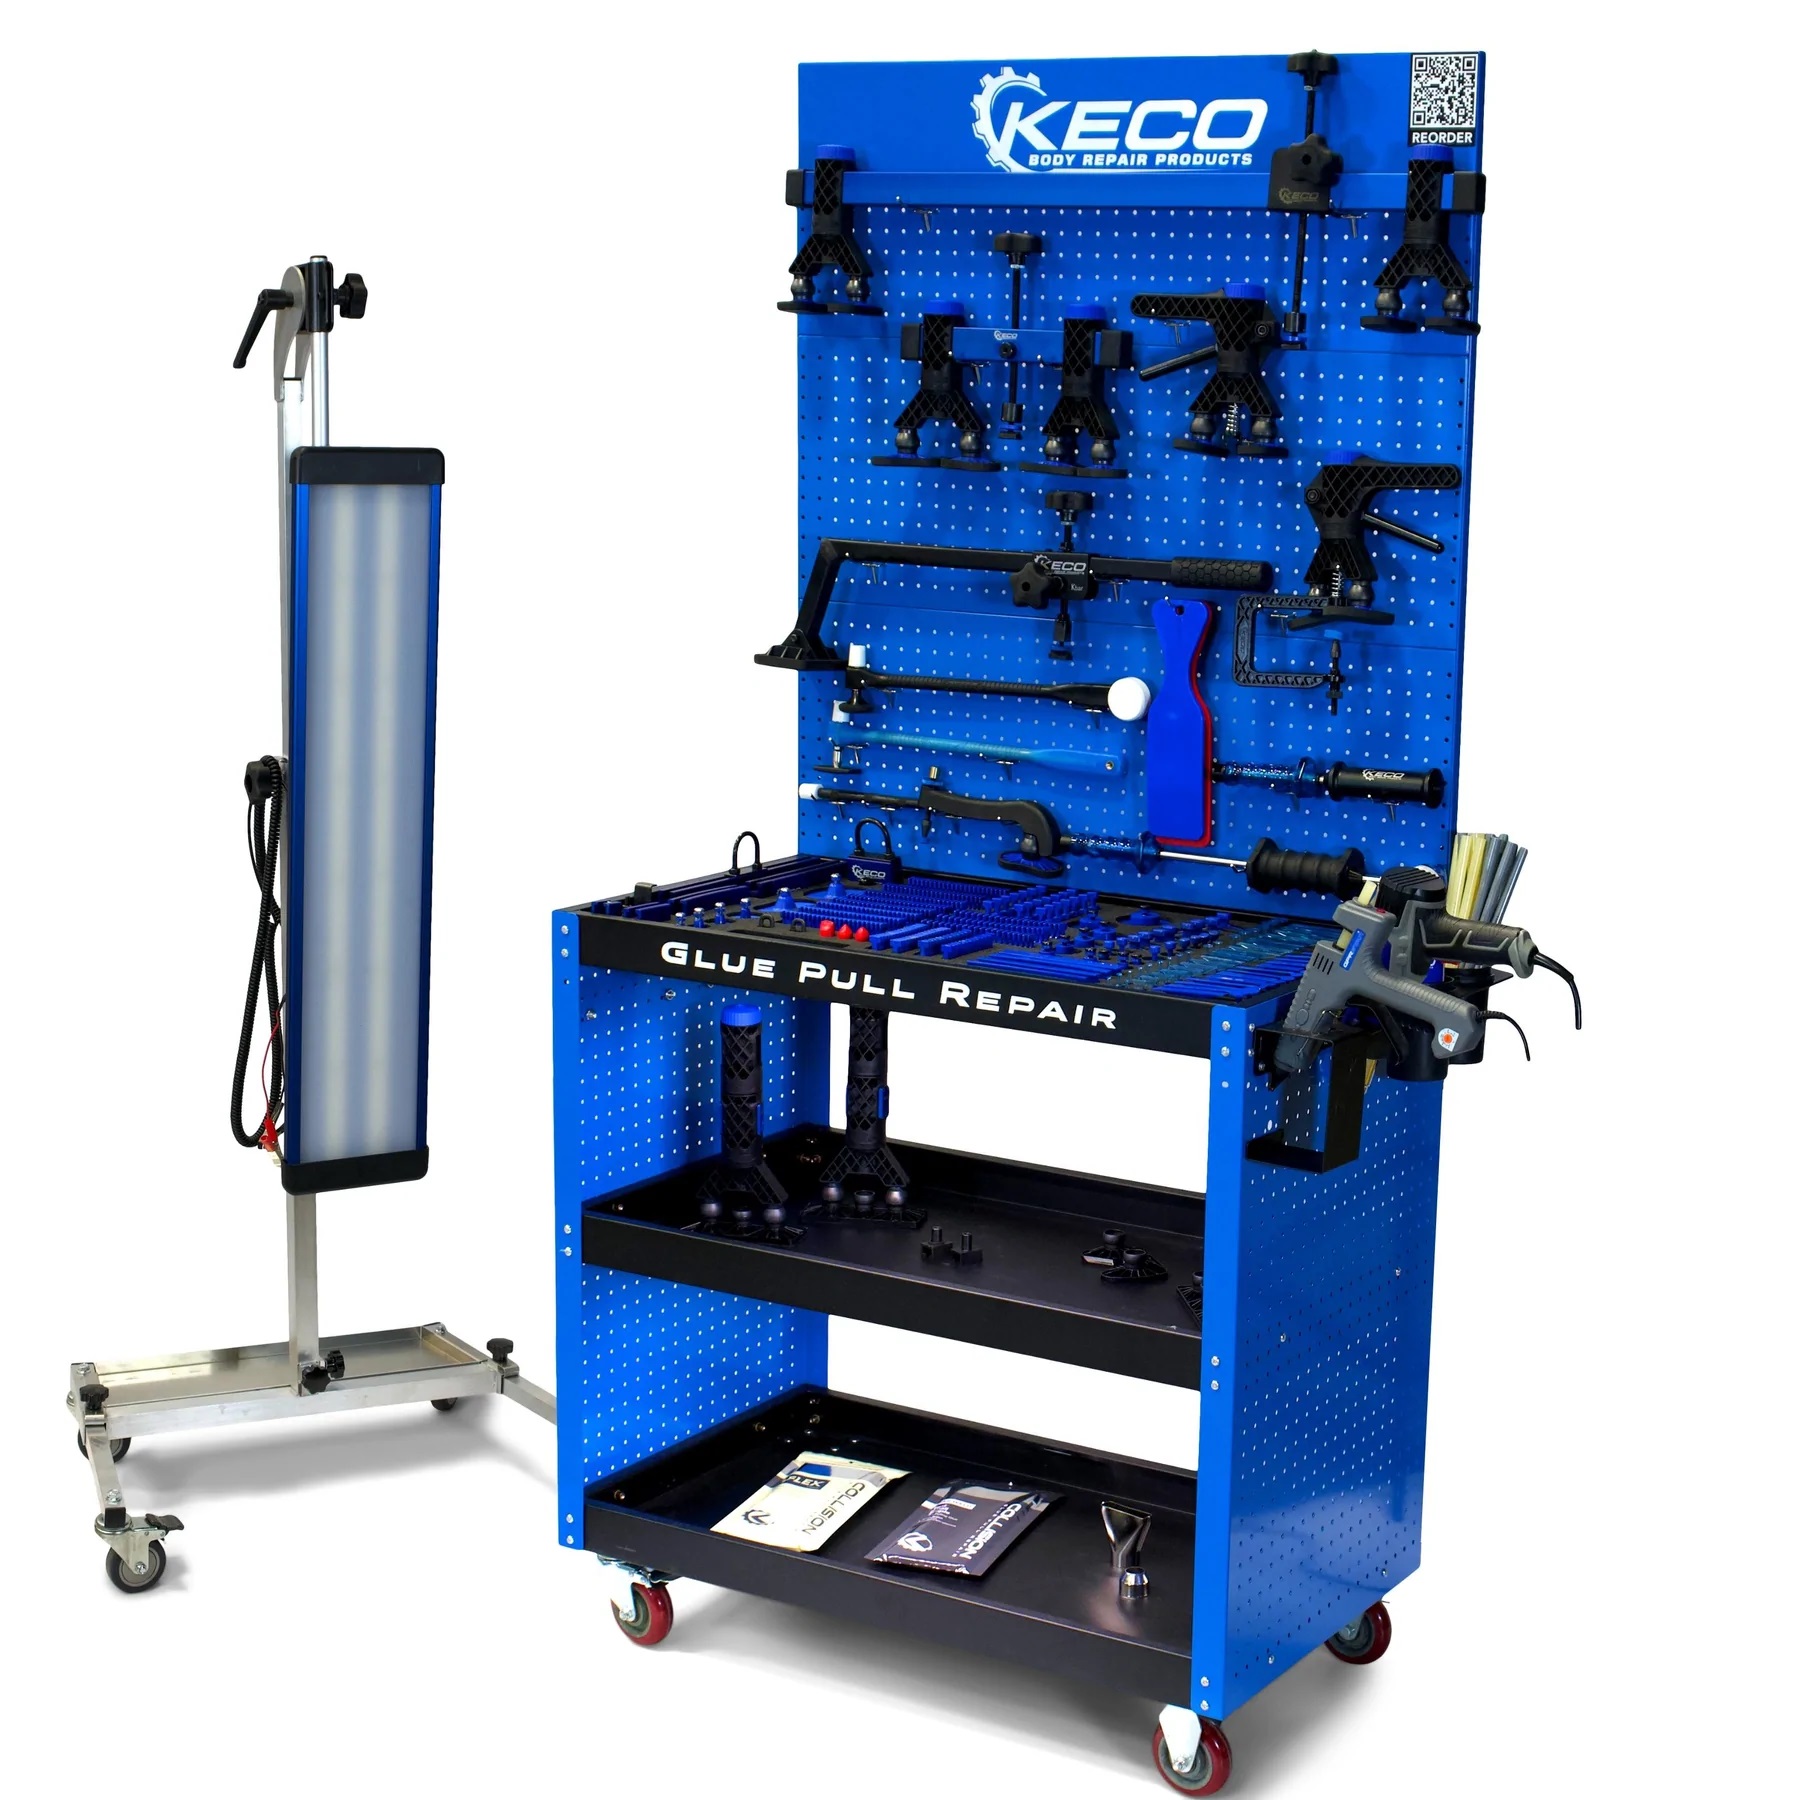 'Het KECO L2E-gereedschapskist in blauw met een lamp voor PDR en GPR'